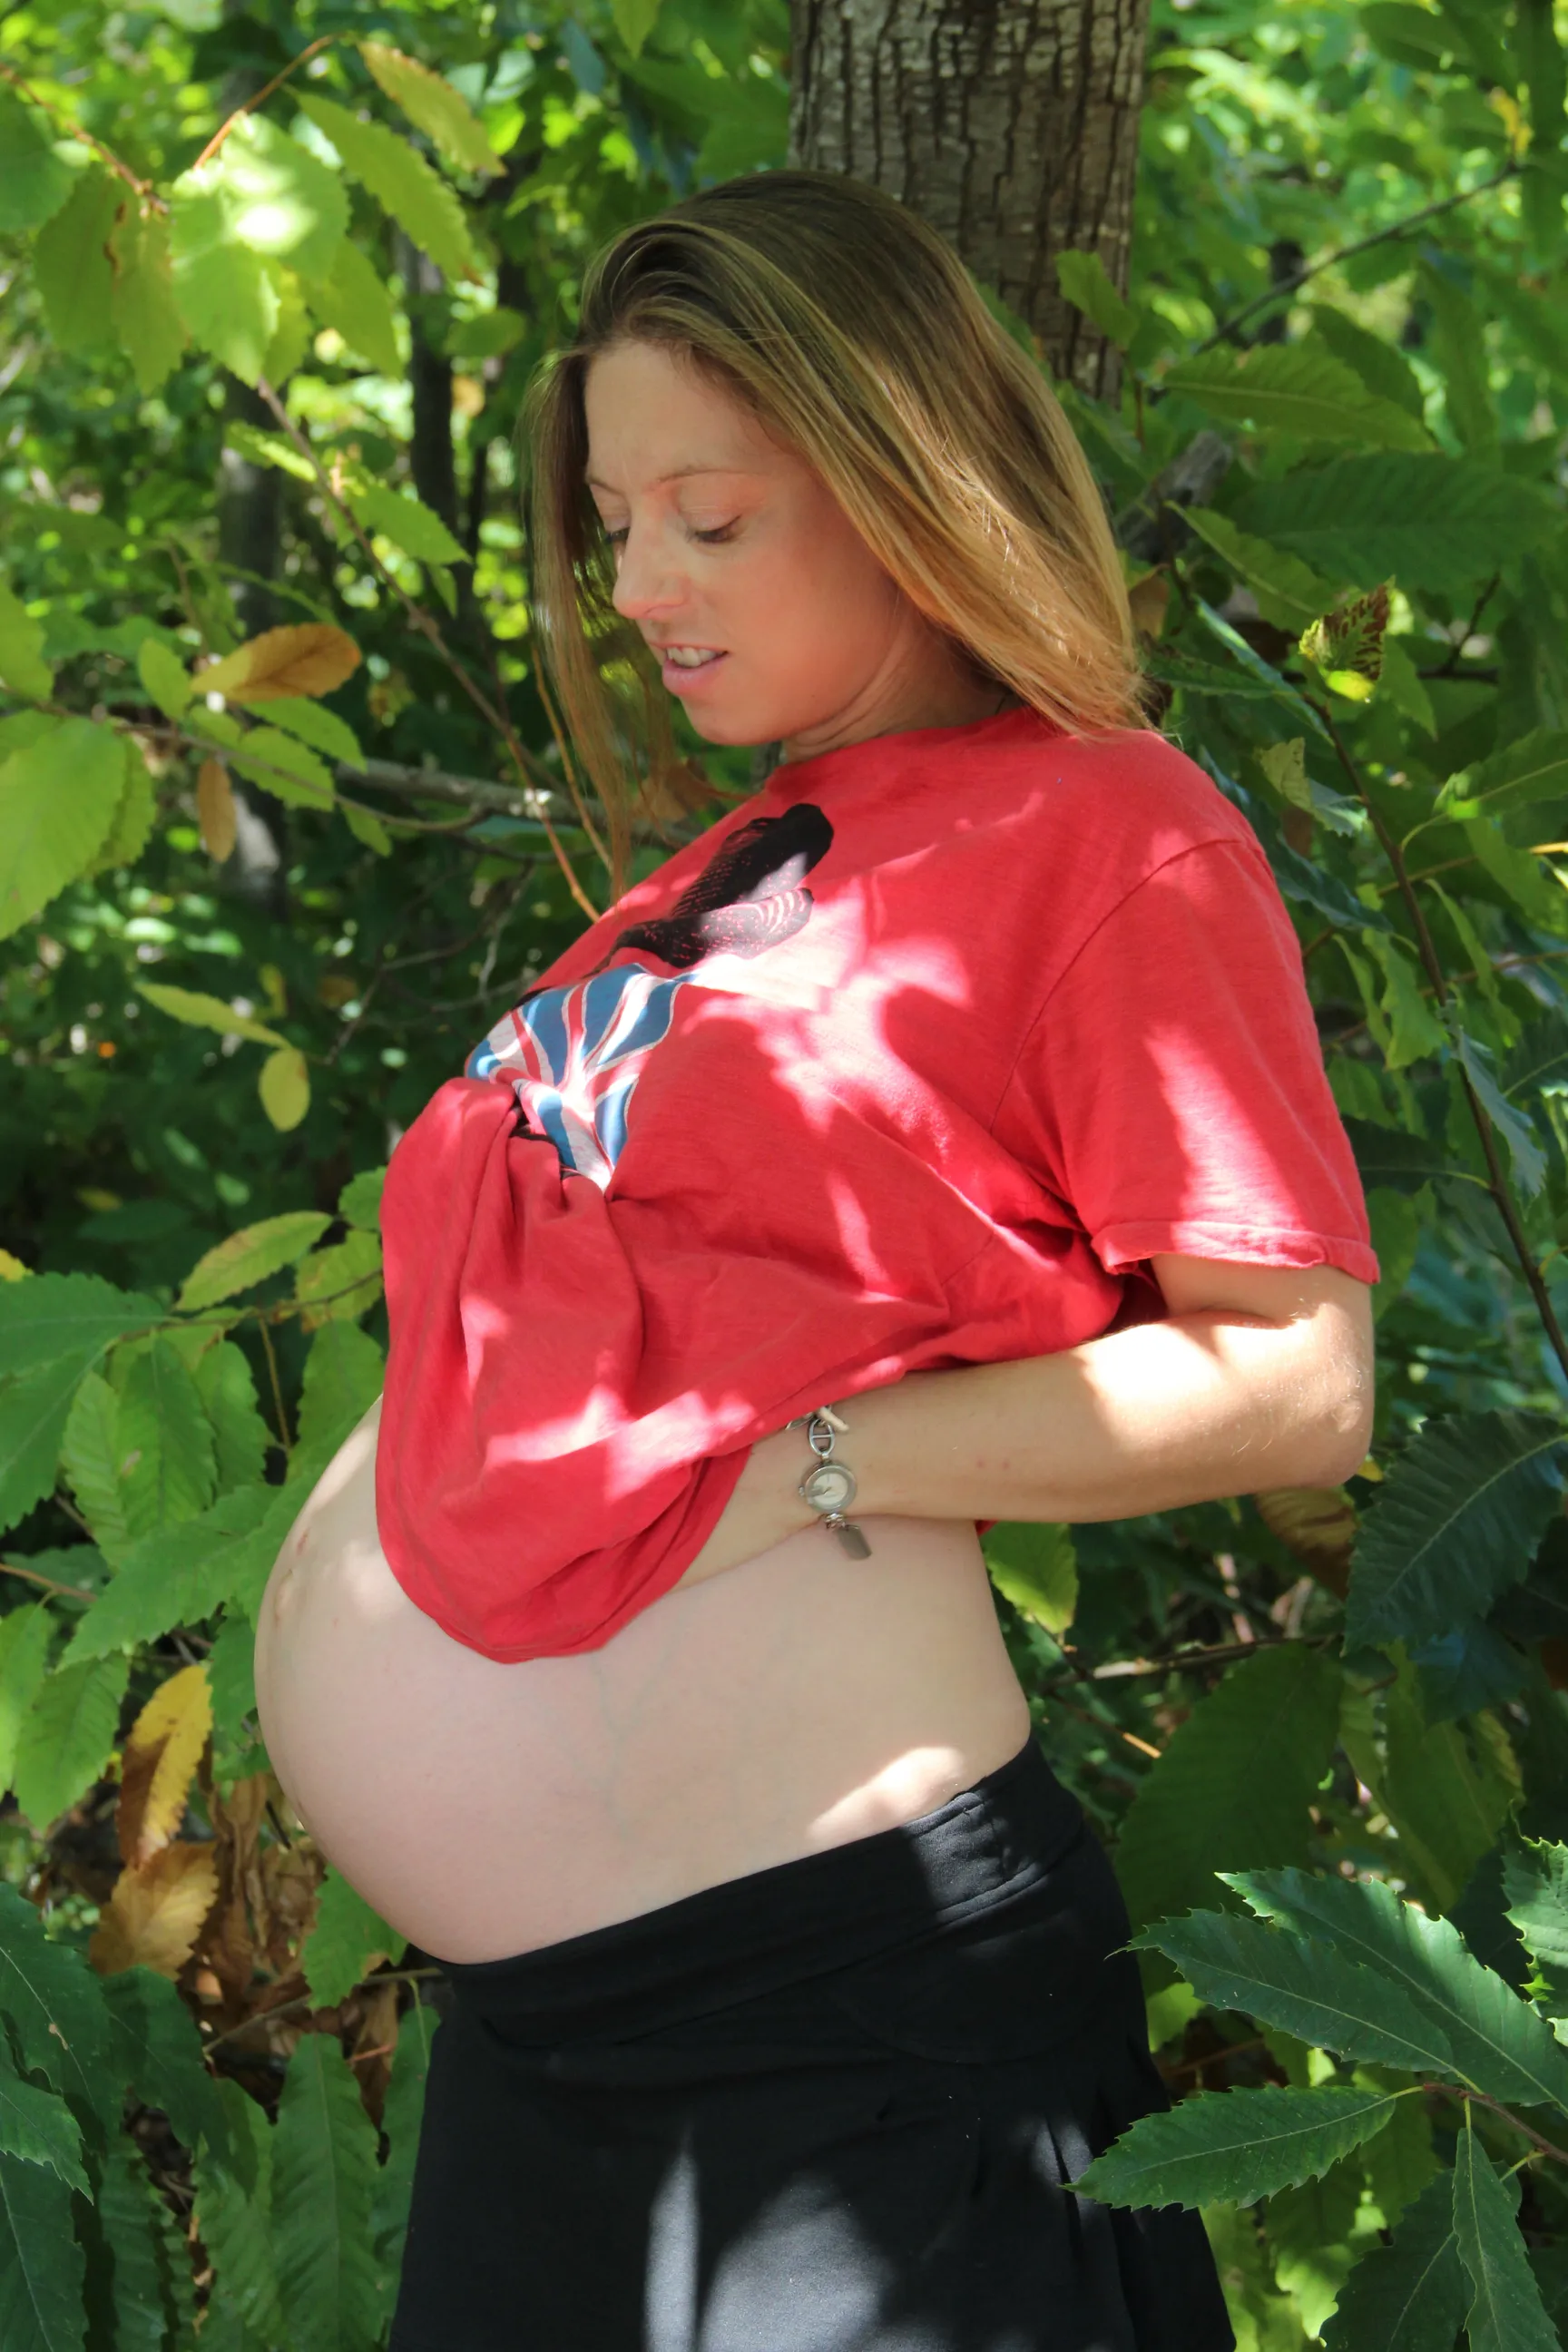 Pregnant belly next door 💋💦